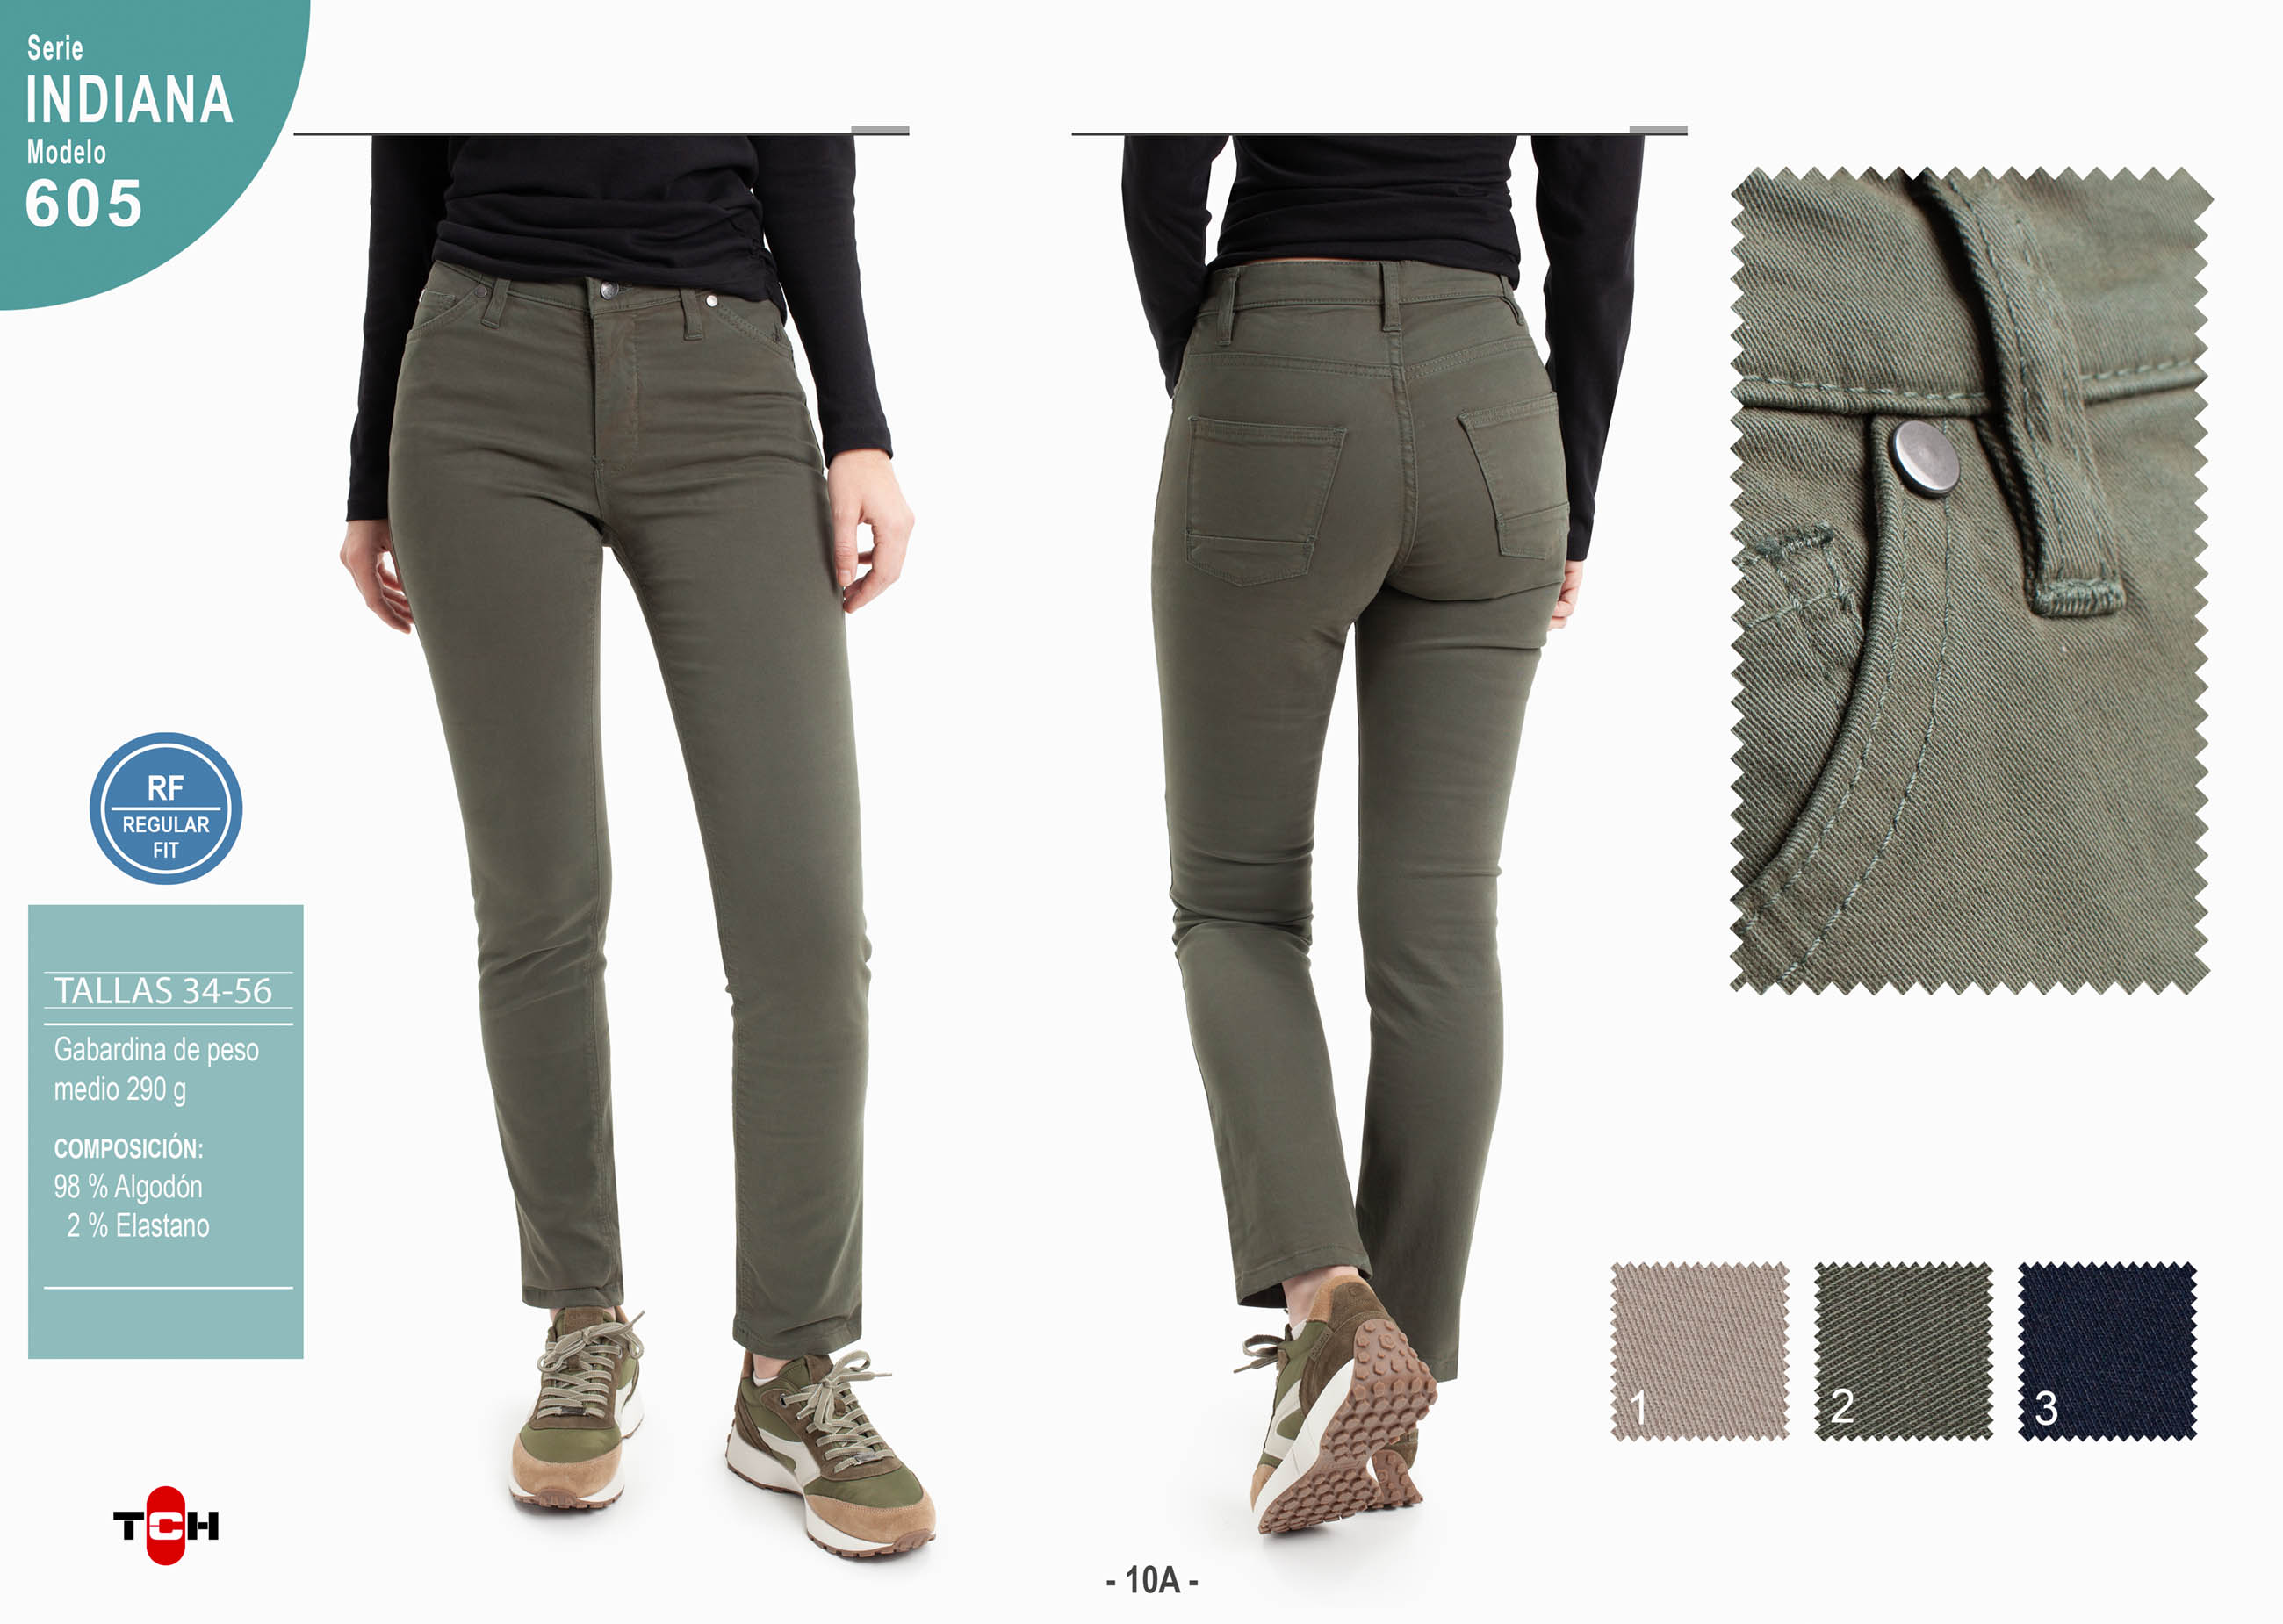 Pantalón 5 bolsillos de colores TCH Jeans elástico ajustado de mujer fabricado en tejido  de algodón con Lycra.